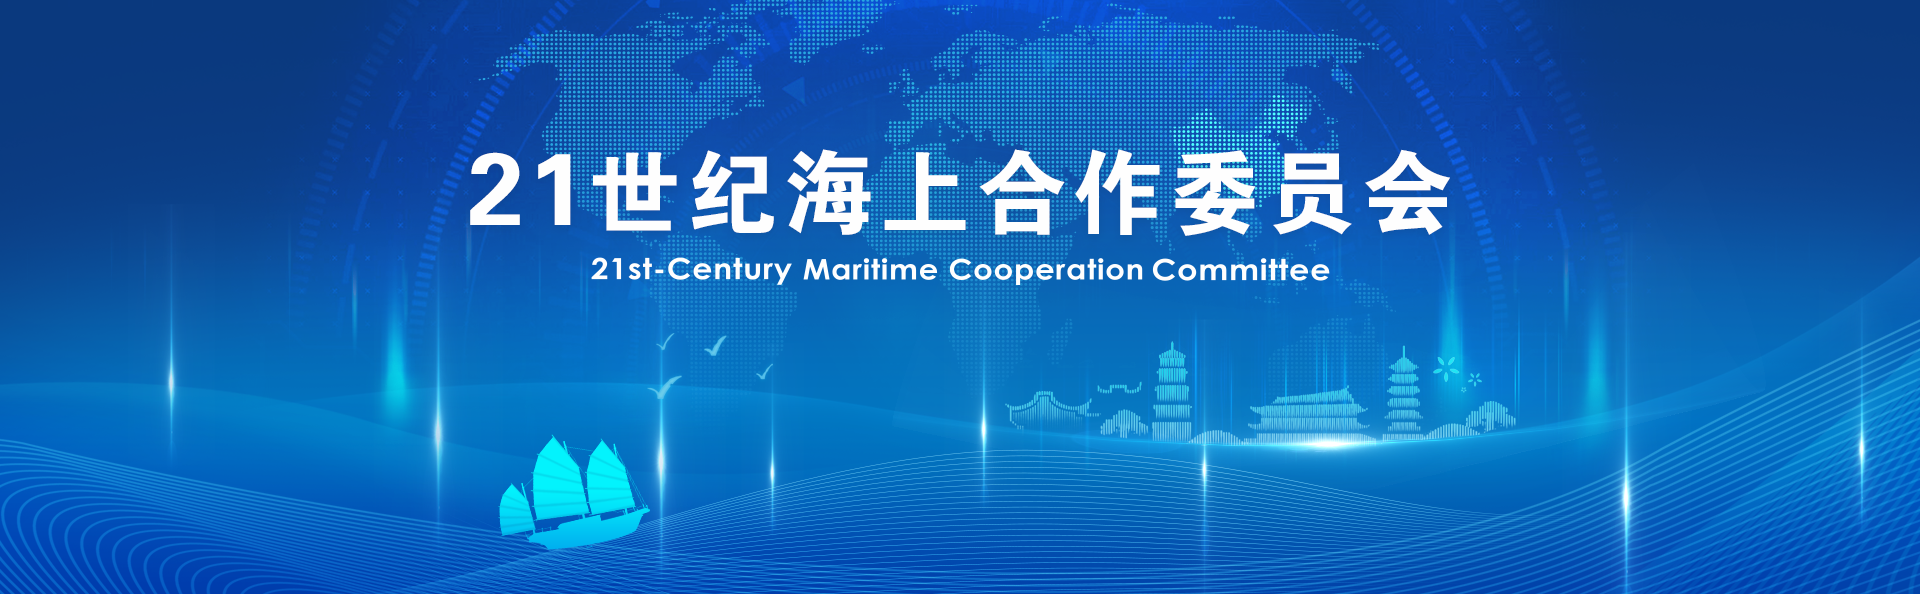 21世纪海上合作委员会